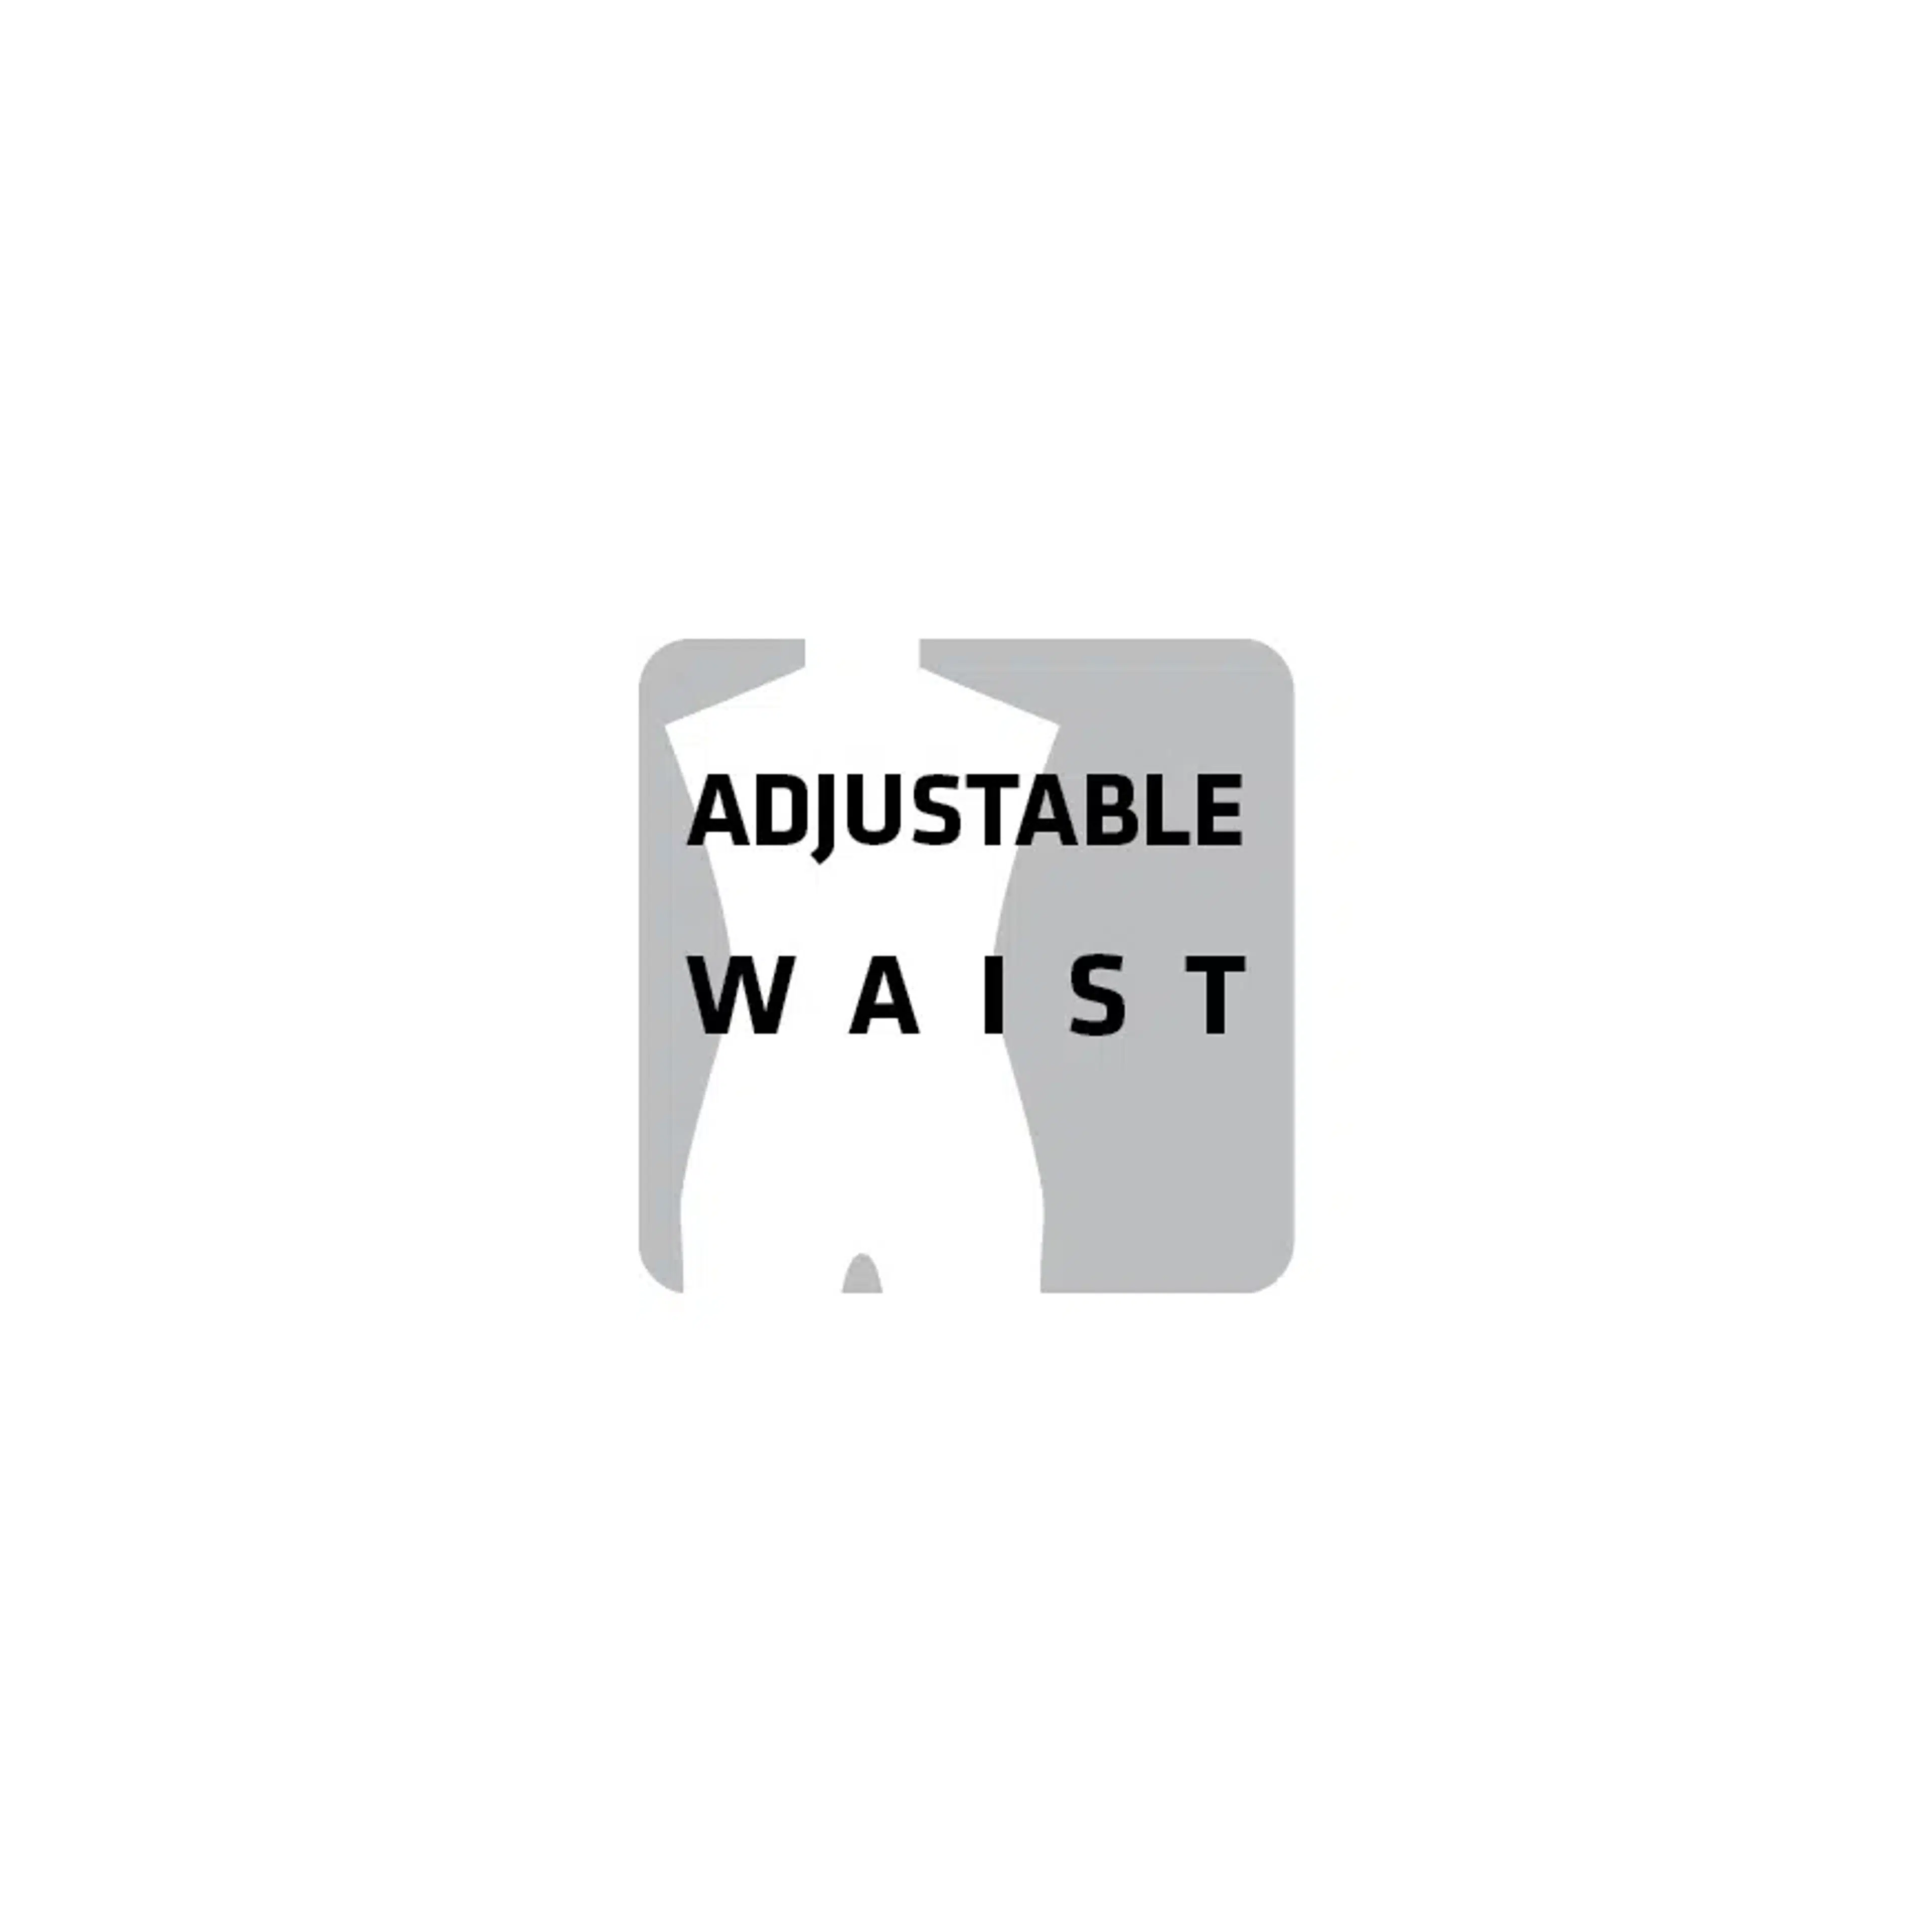 Adjustable Waist